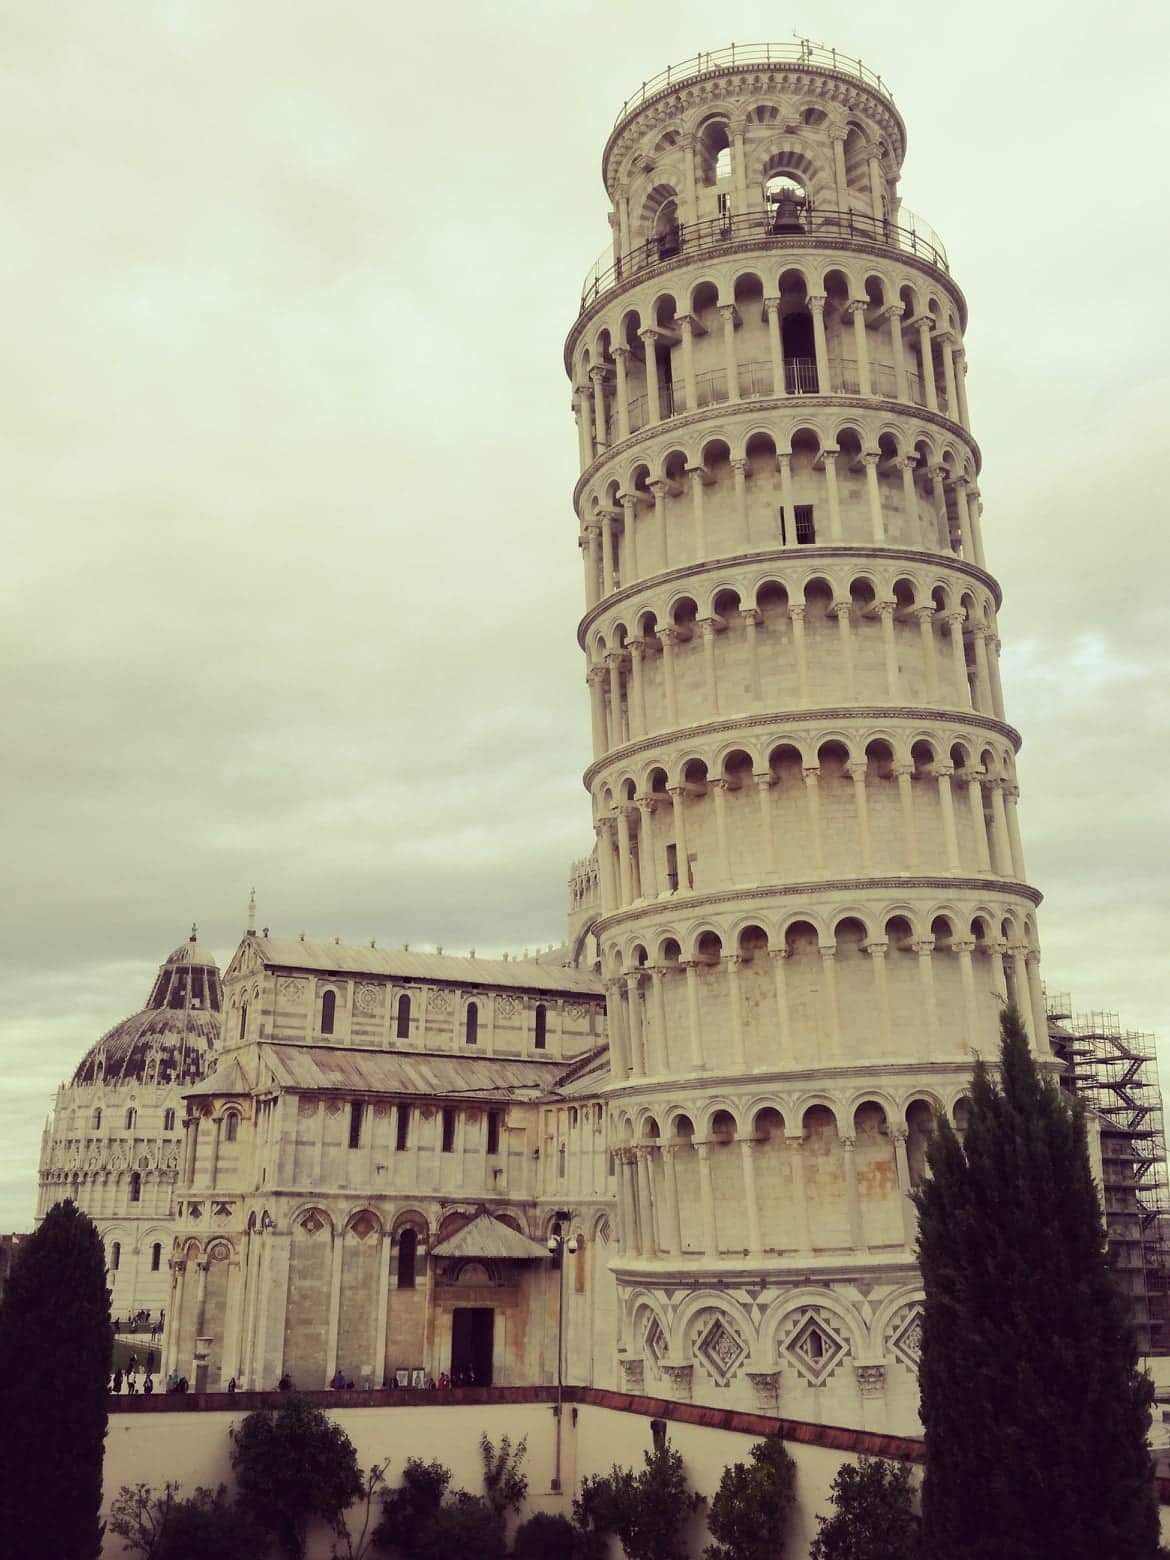 Tower of Pisa (Italian Torre pendente di Pisa) free